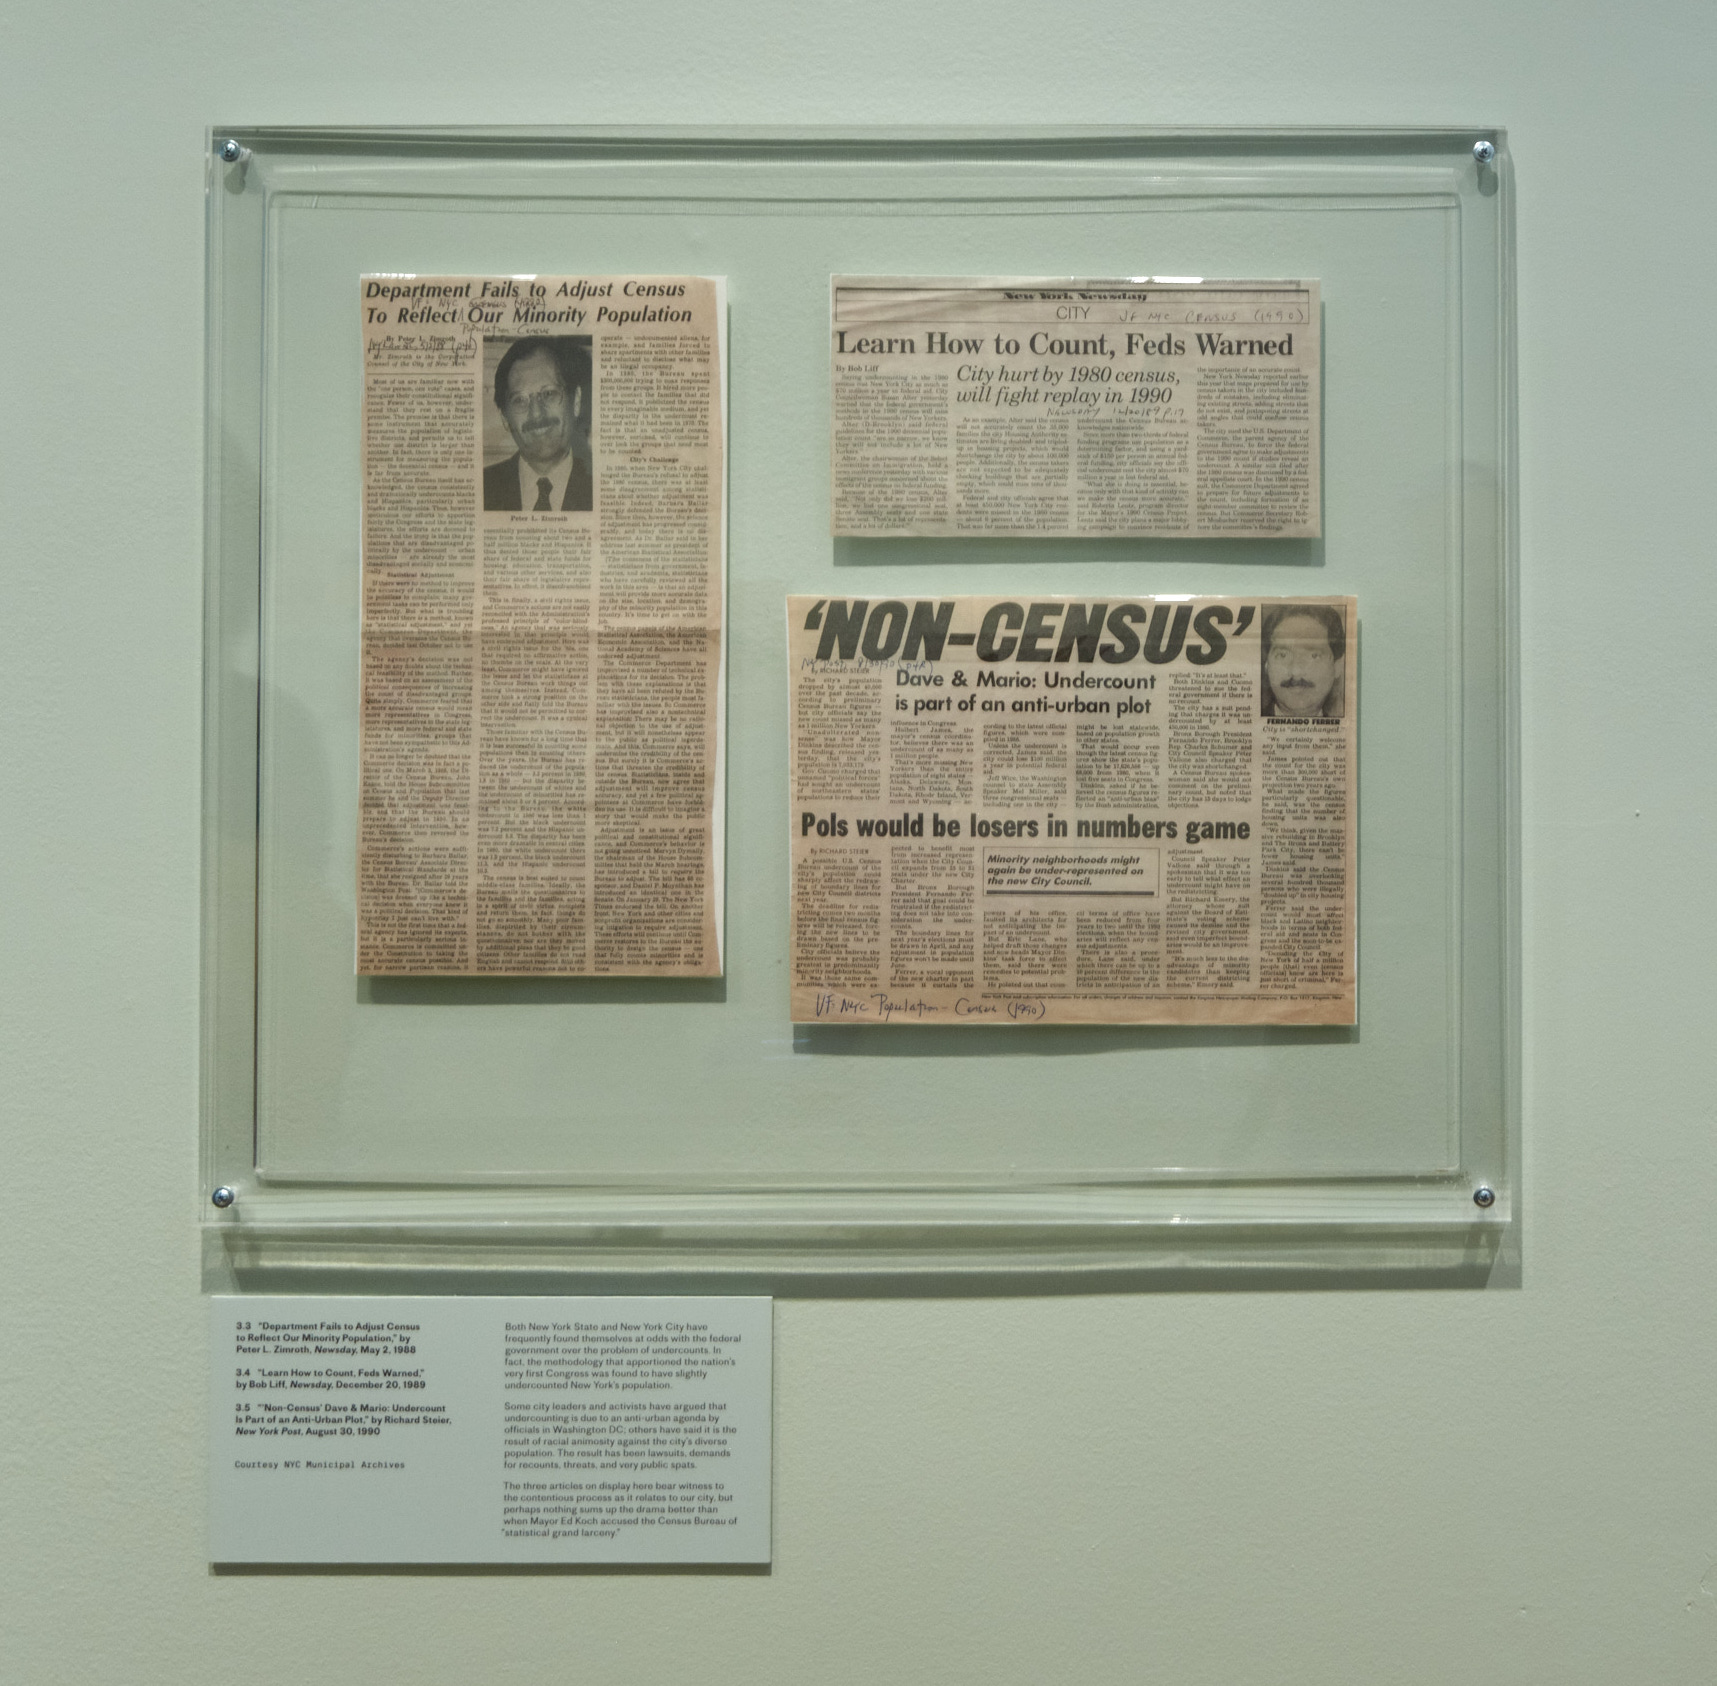 报纸剪报上有头条新闻，说普查中的纽约被低估了。